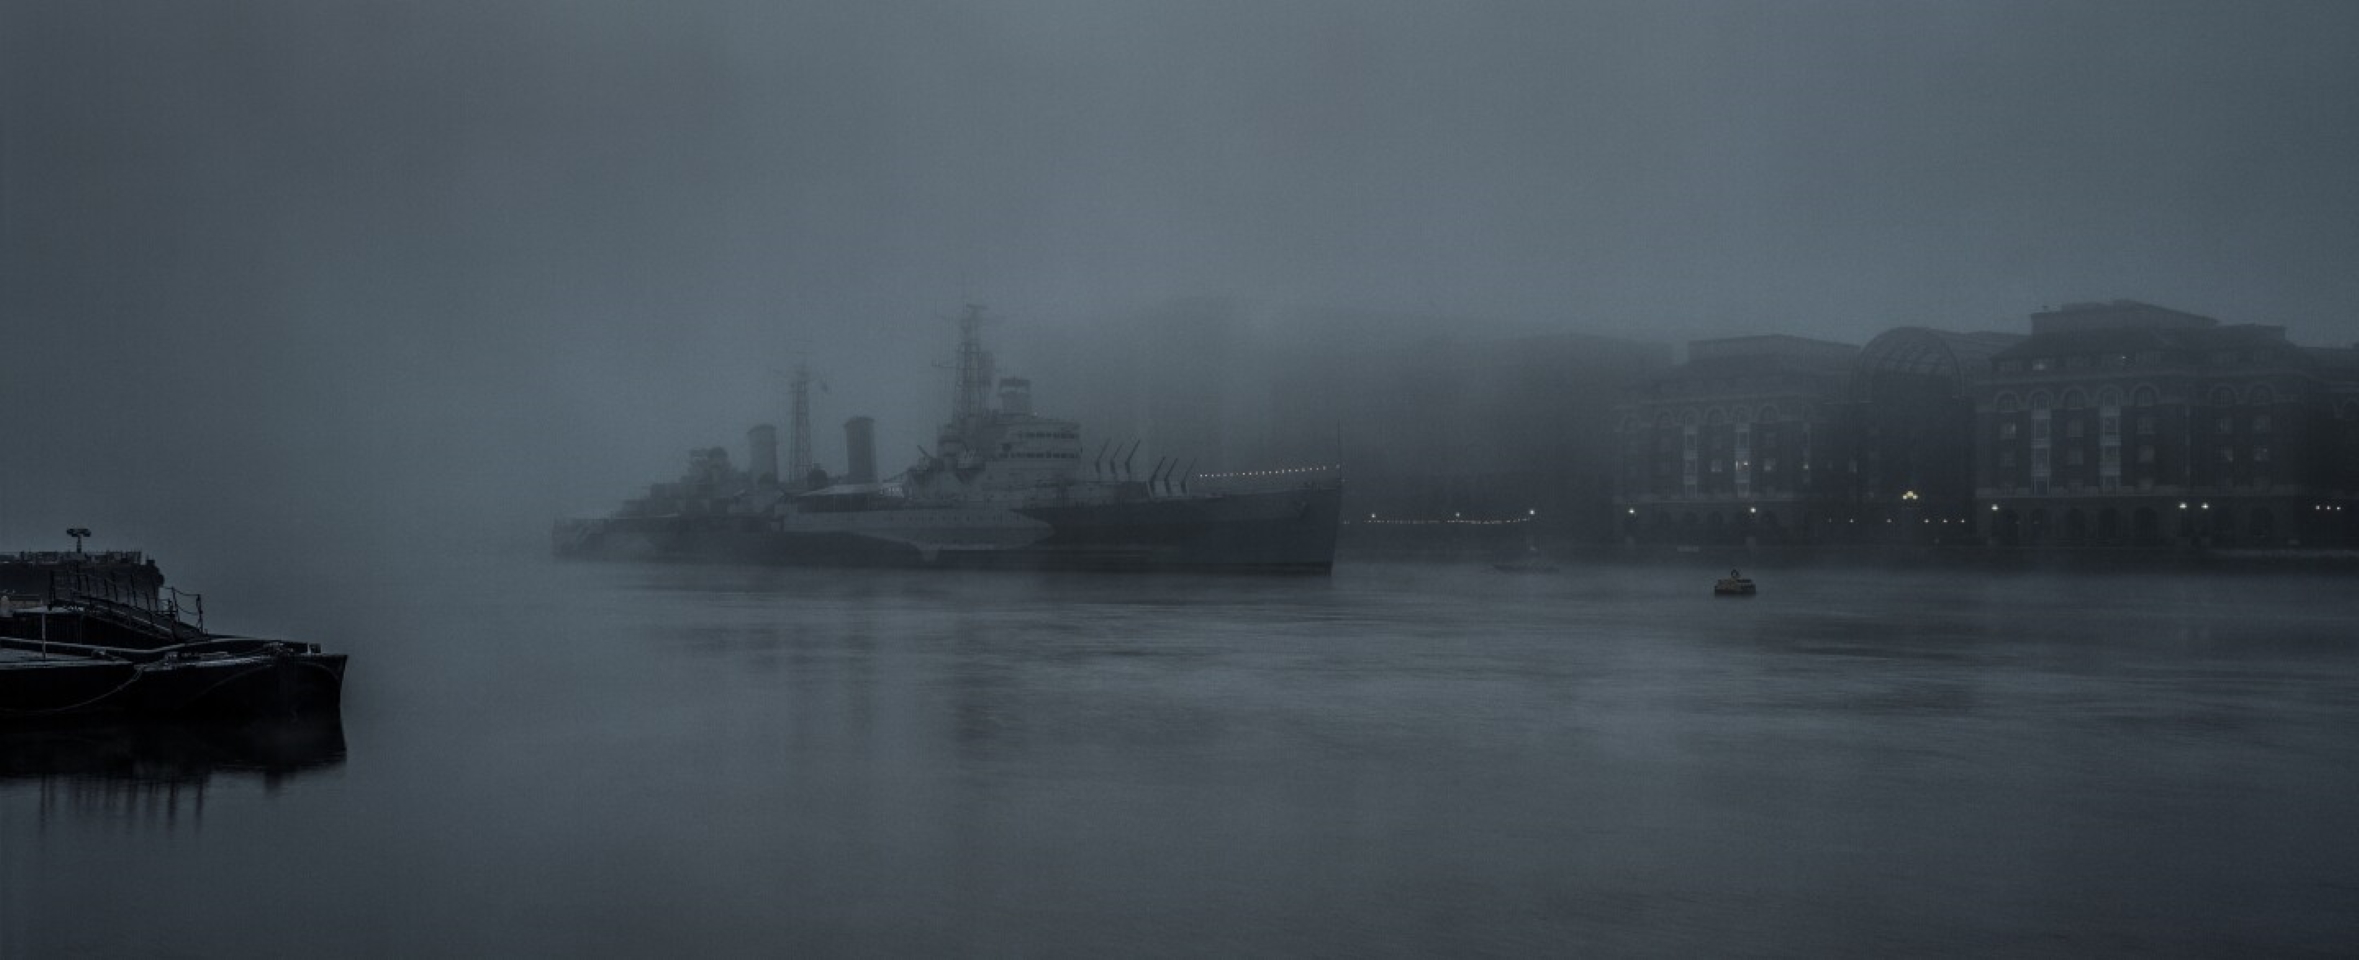 В финальном списке. HMS Belfast - британский лёгкий крейсер, один из 9 крейсеров этого типа в составе Королевского военно-морского флота во время Второй мировой войны. Является кораблём-музеем (филиал Имперского военного музея). Находится постоянно на стоянке в центре Лондона на реке Темзе, возле Тауэрского моста. Фото: Guy Sargent